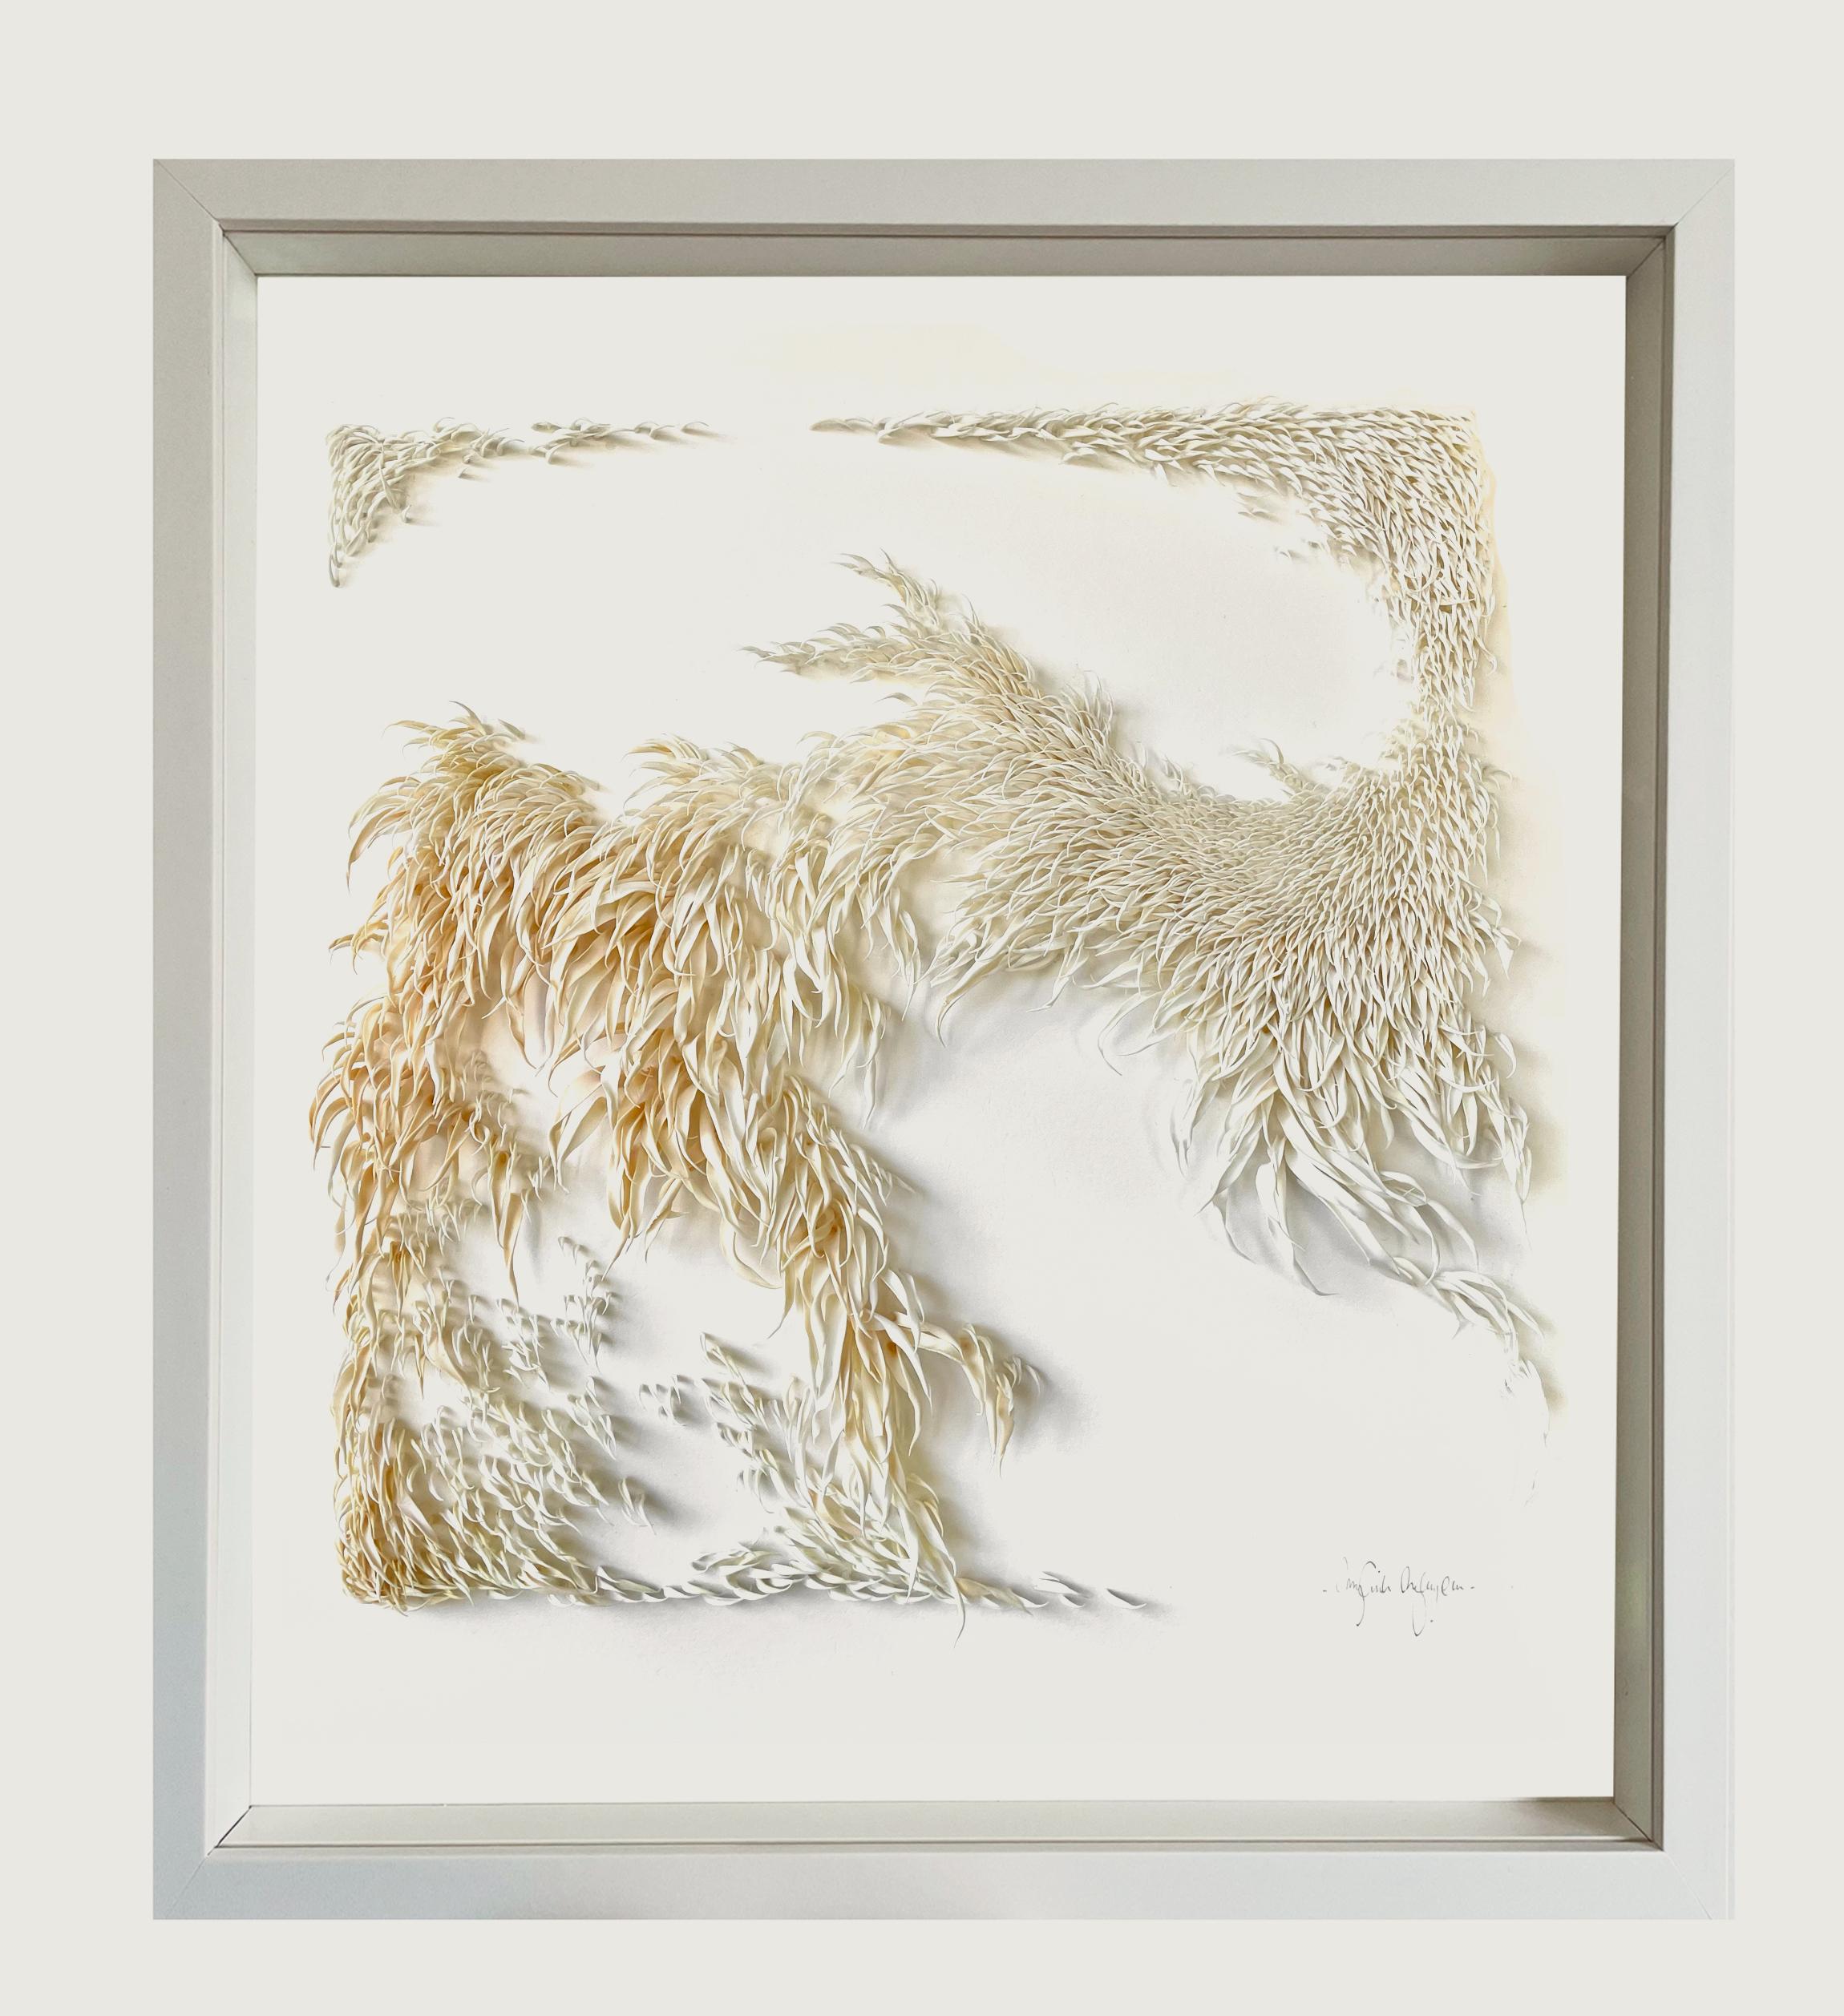 Gentle Current - abstrakte, von der Nature inspirierte weiße Minimal-Collage aus Ton auf Papier – Mixed Media Art von Mylinh Ngyen